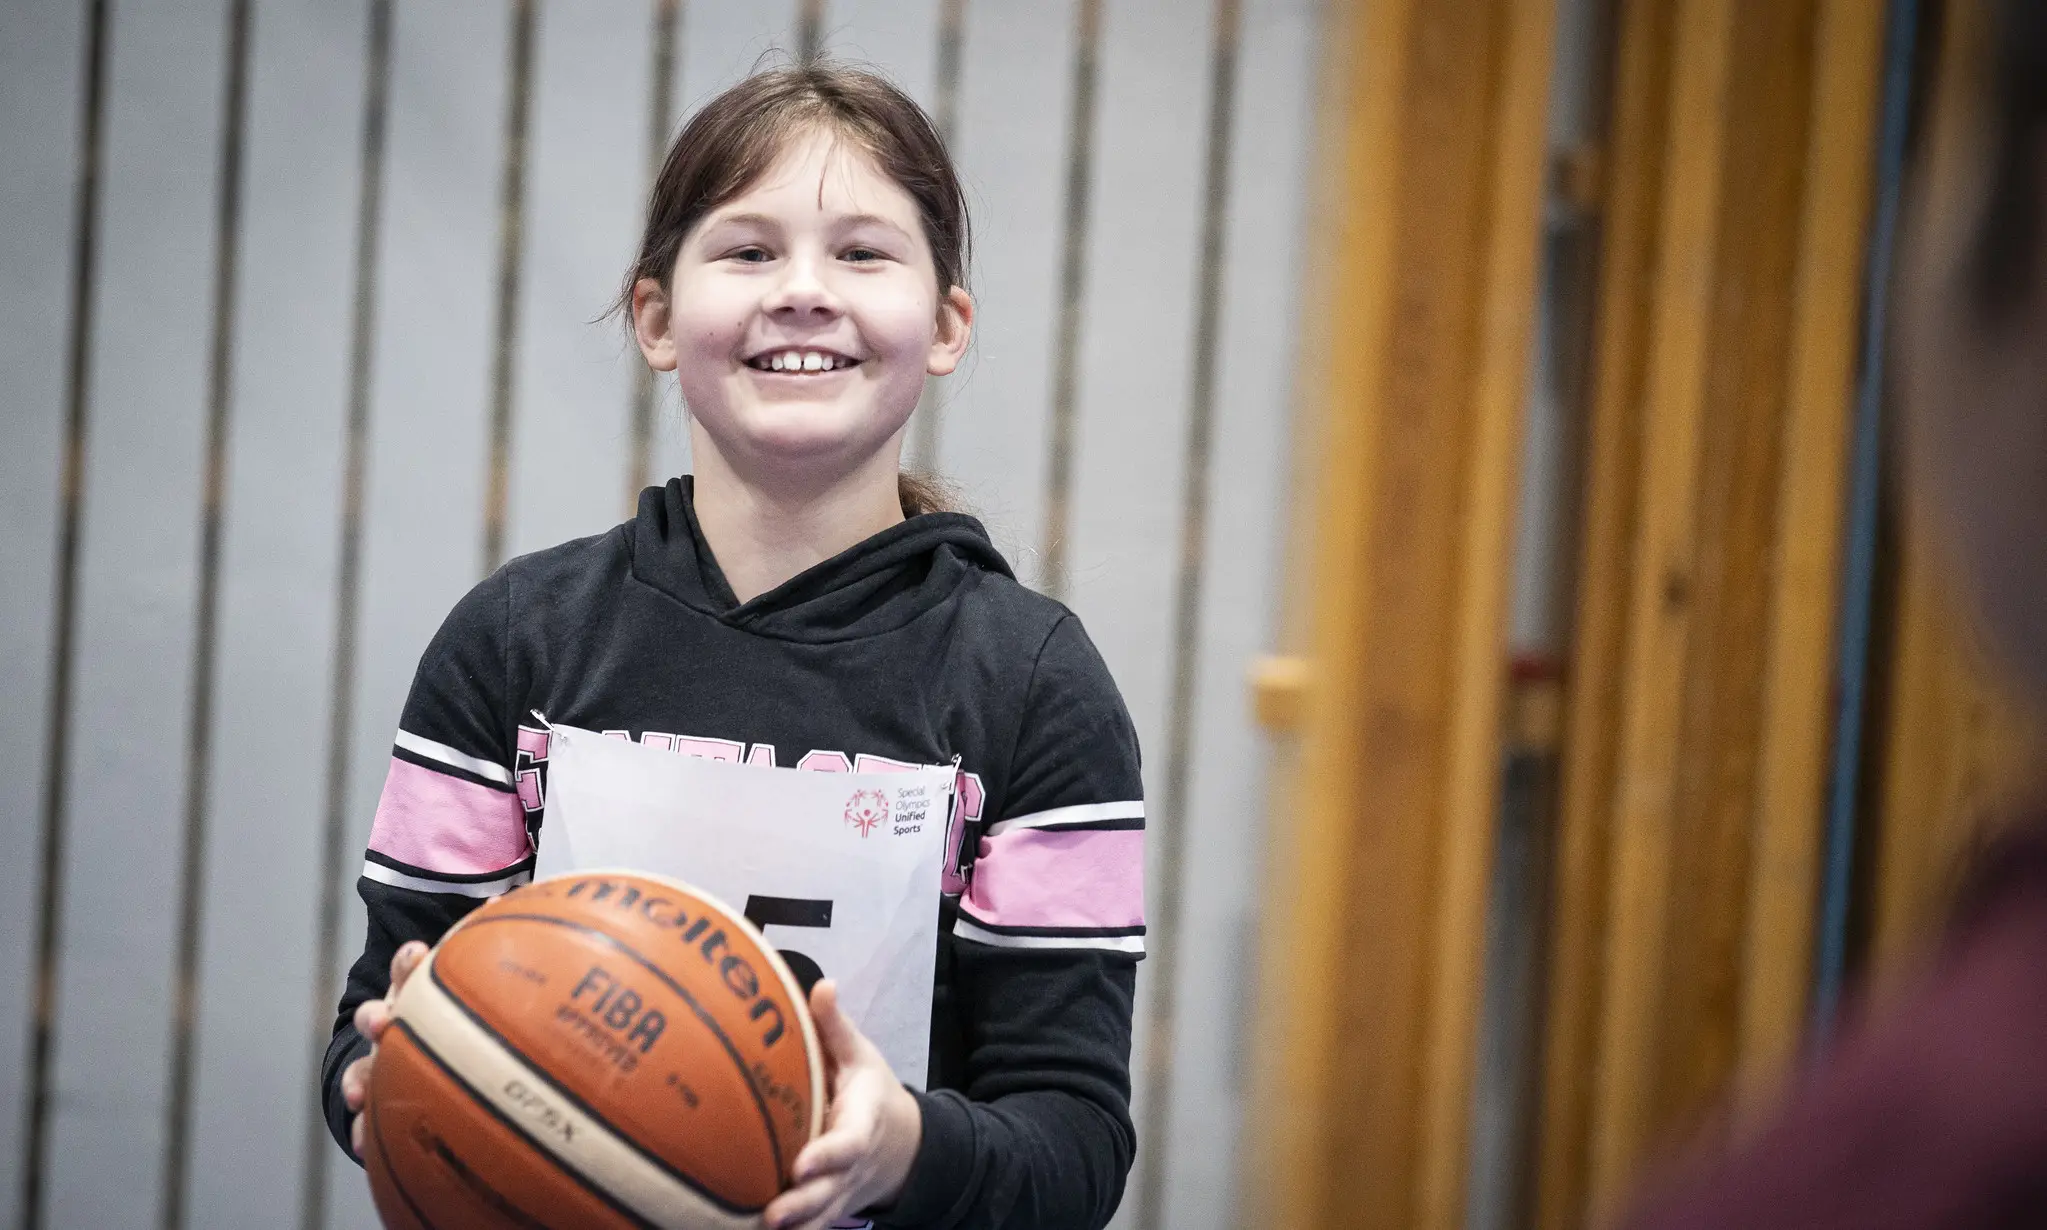 Flicka i sporthall håller i en basketboll. Hon ser glad ut och tittar mot kameran.